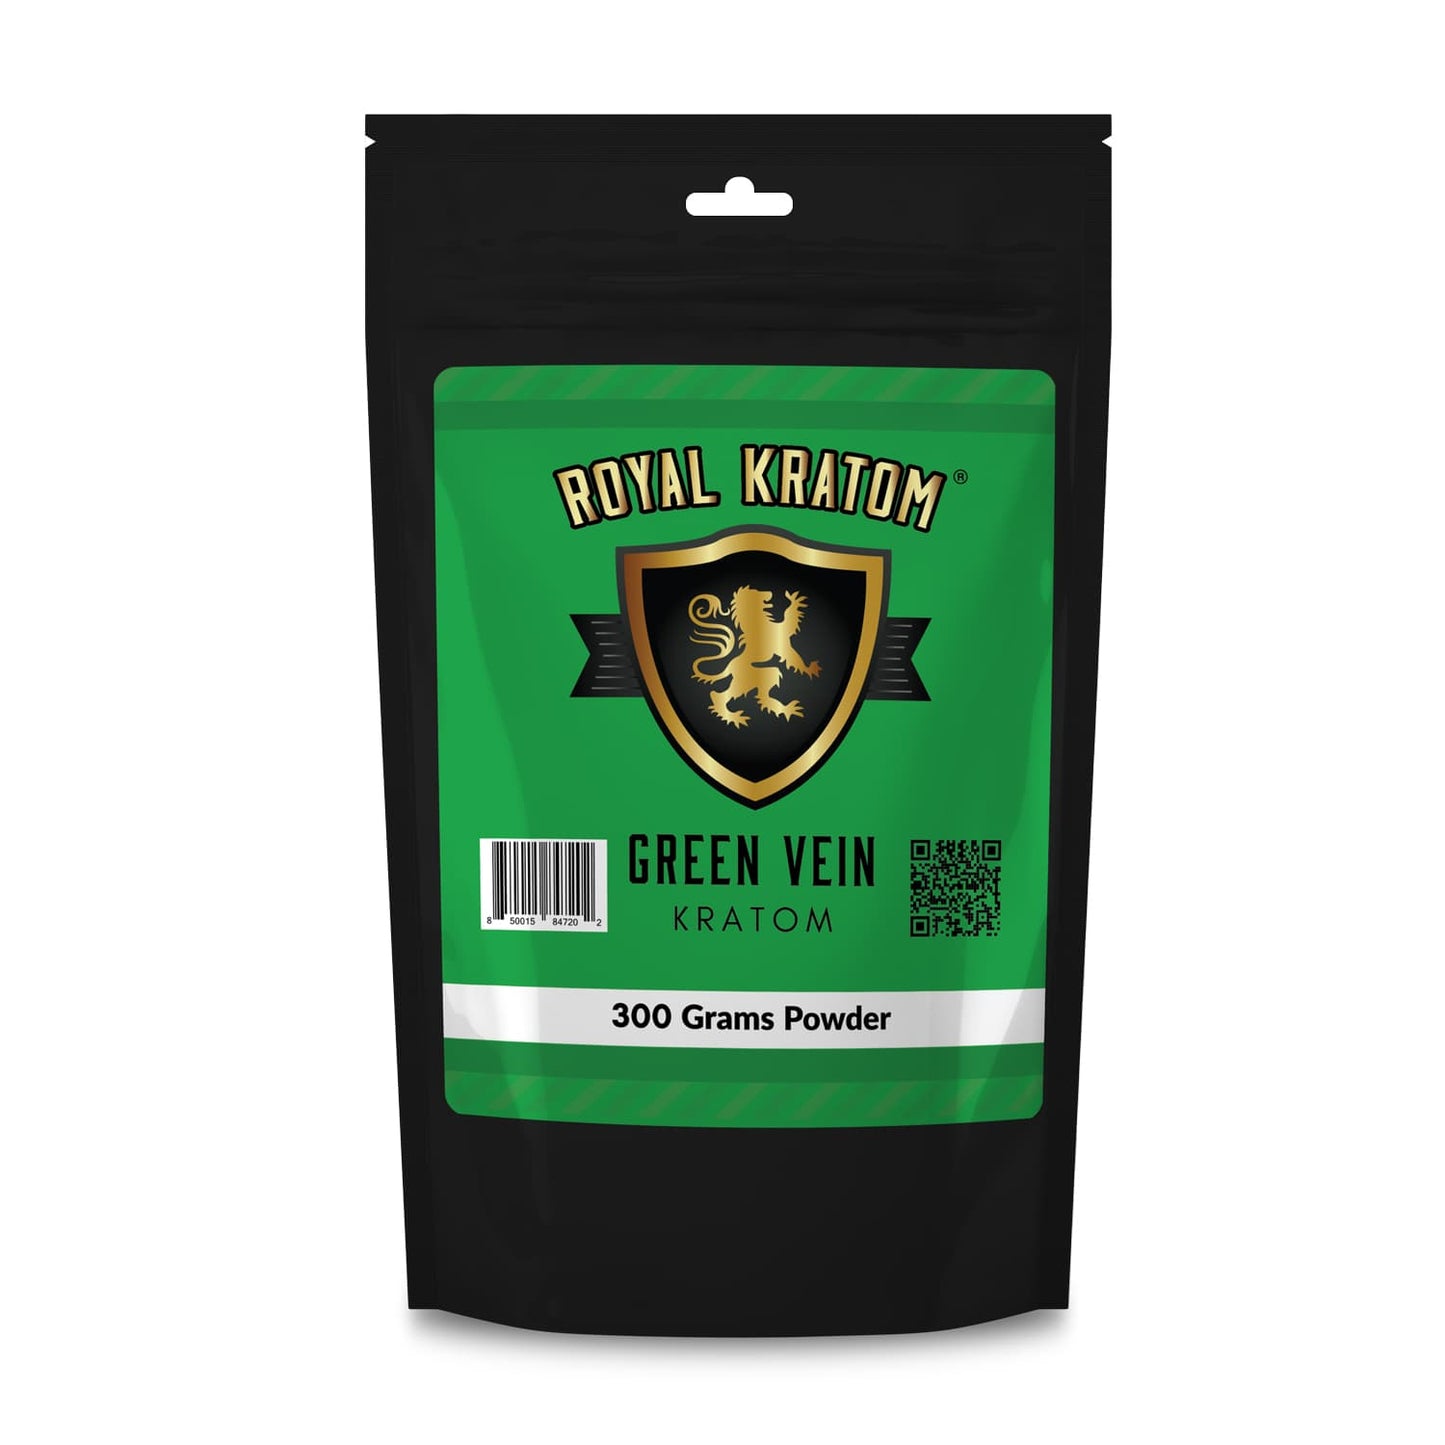 Royal Kratom green vein kratom powder 300 grams package